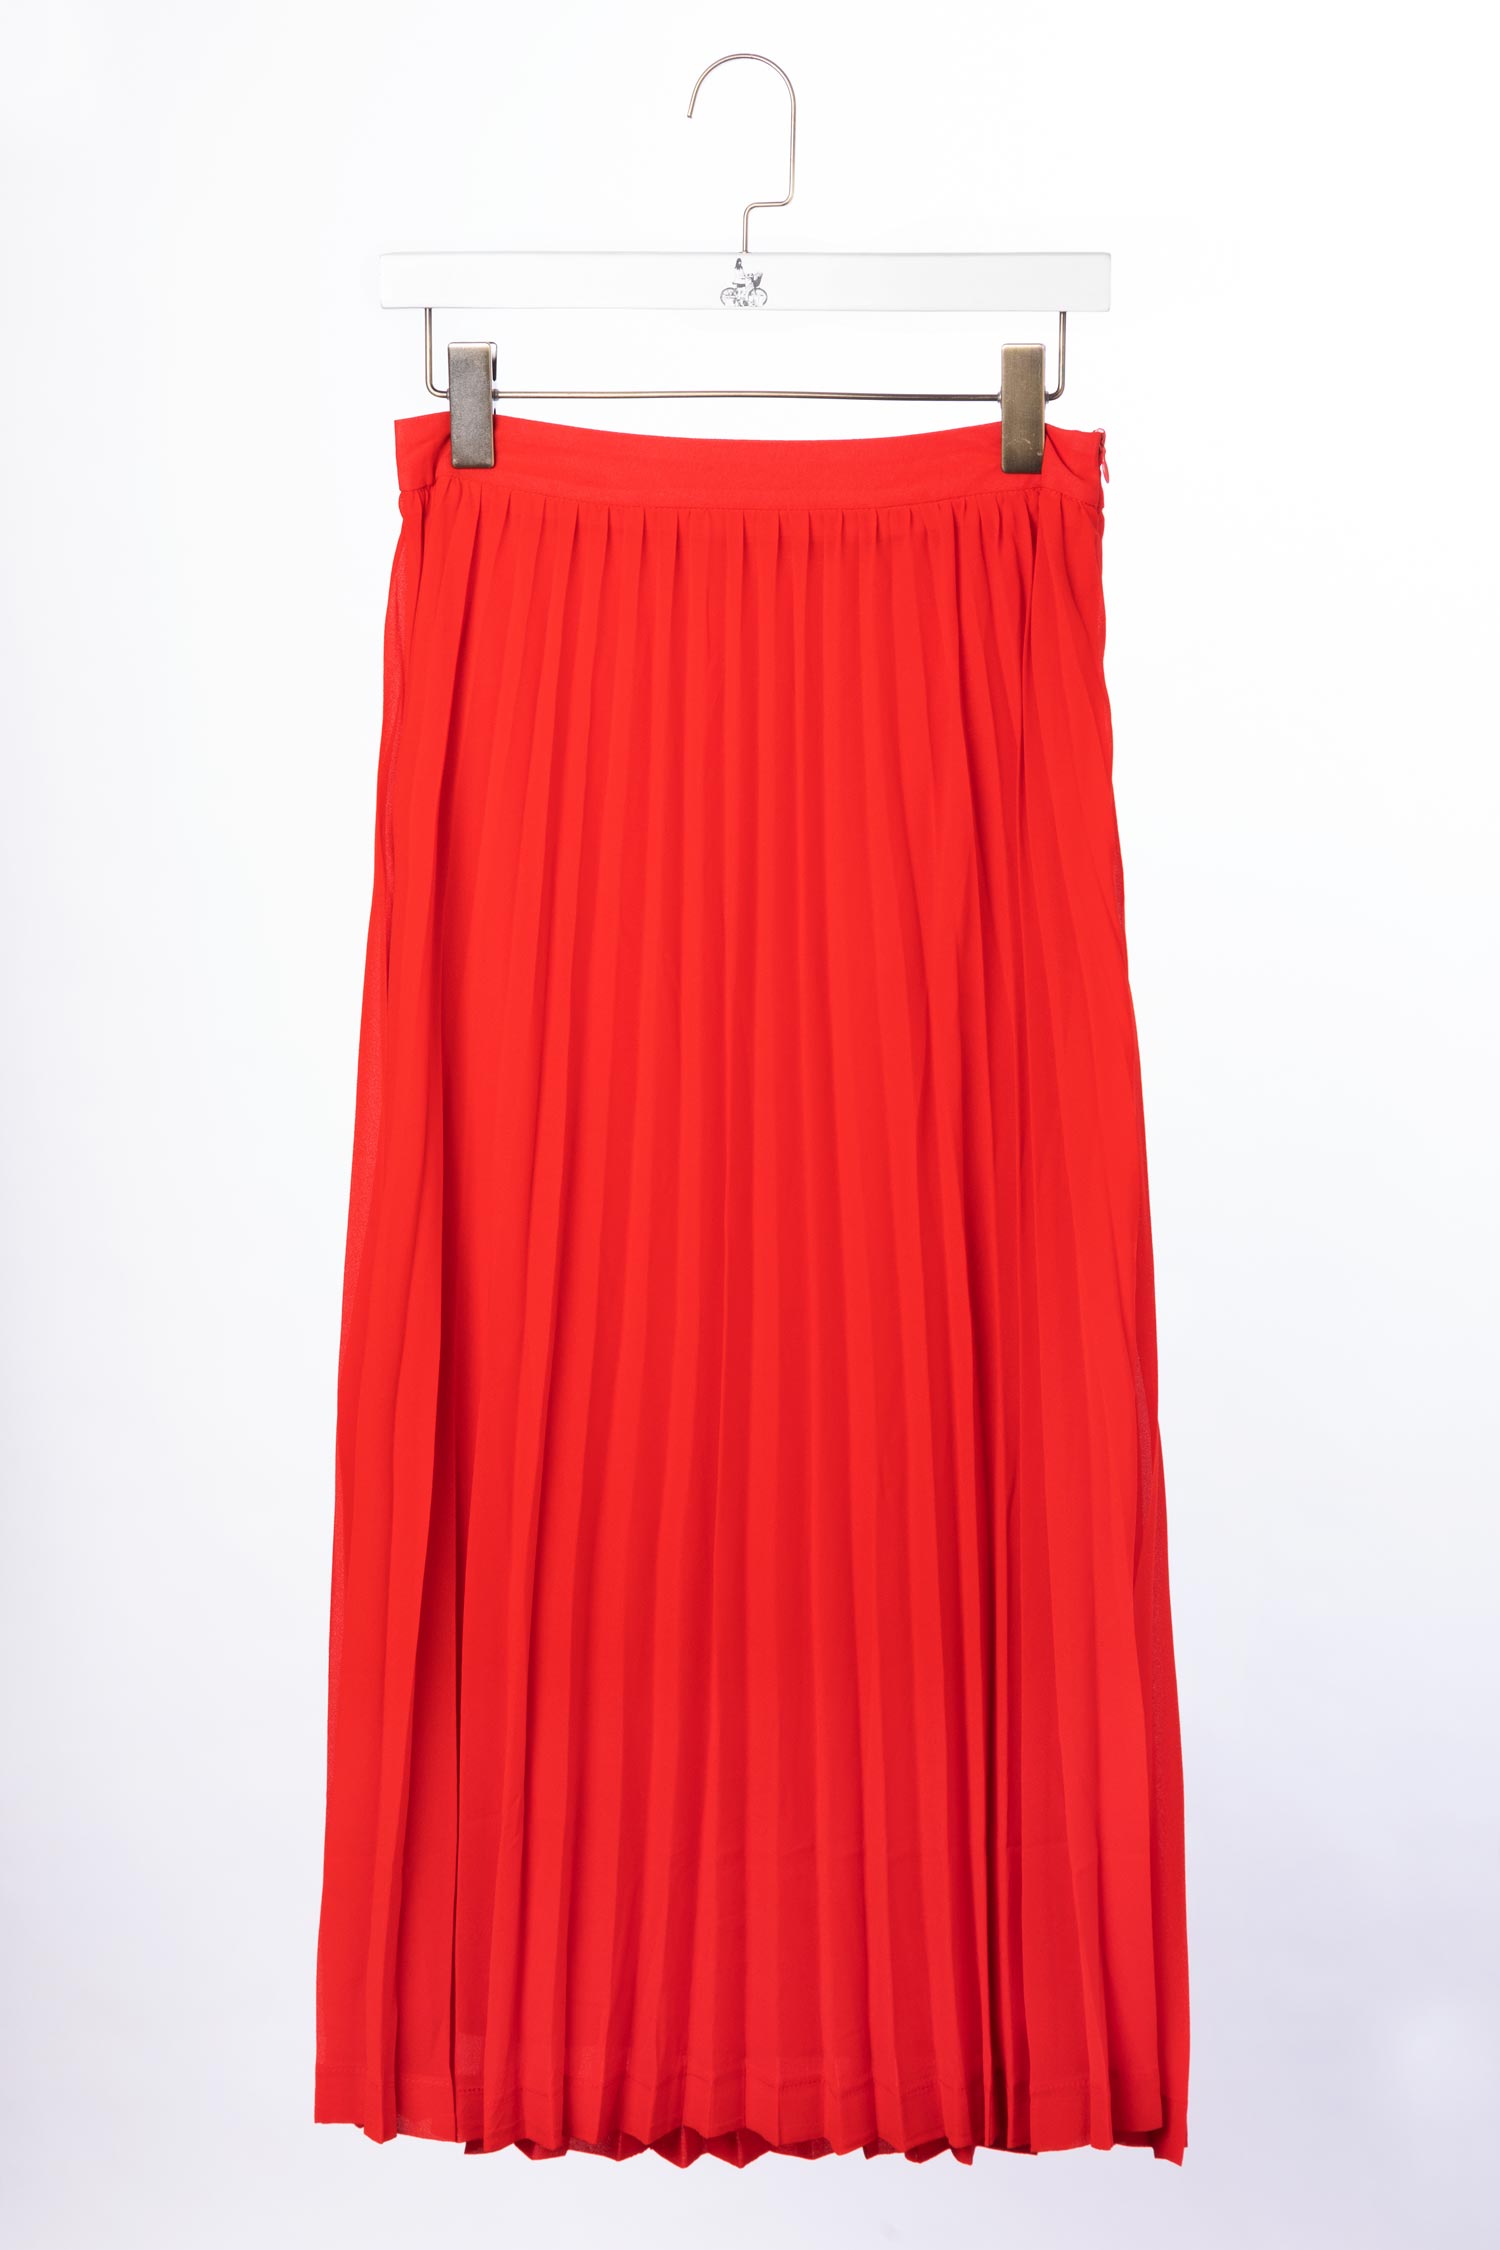 Skirt K110 Red – The Eastlet